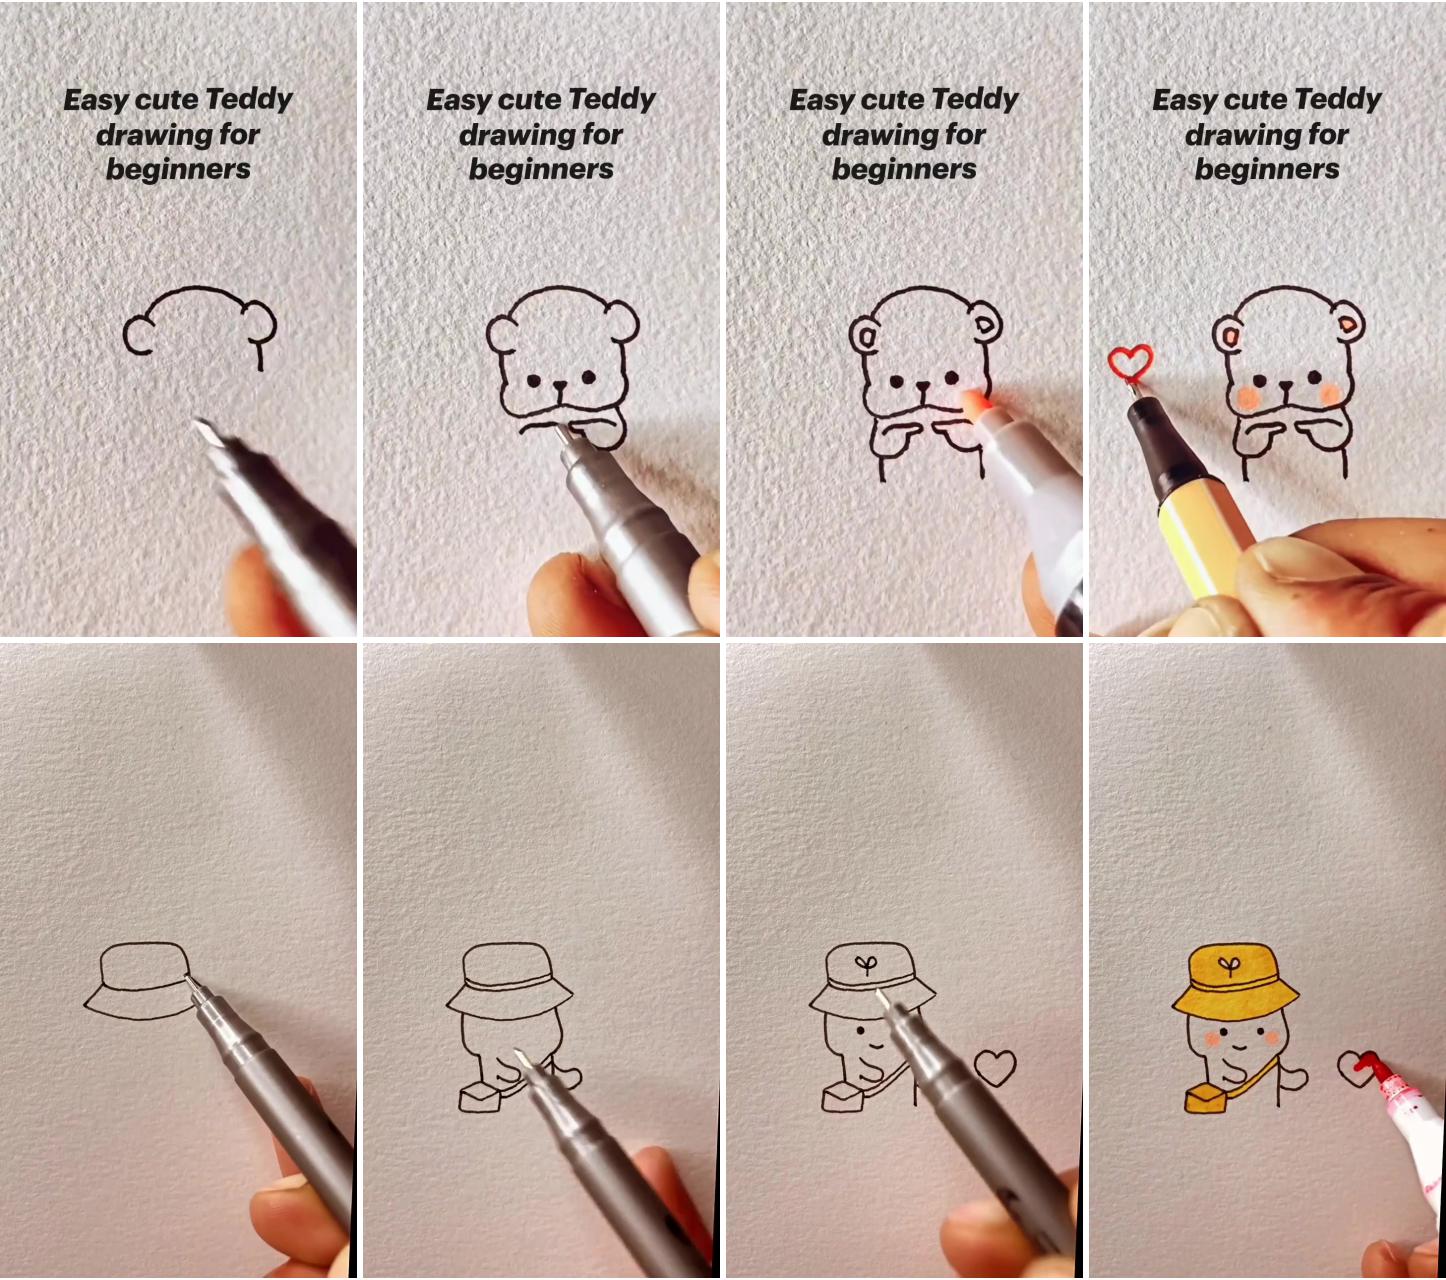 Easy cute teddy drawing for beginners, cute minimal drawings step by step | cute doodles drawings